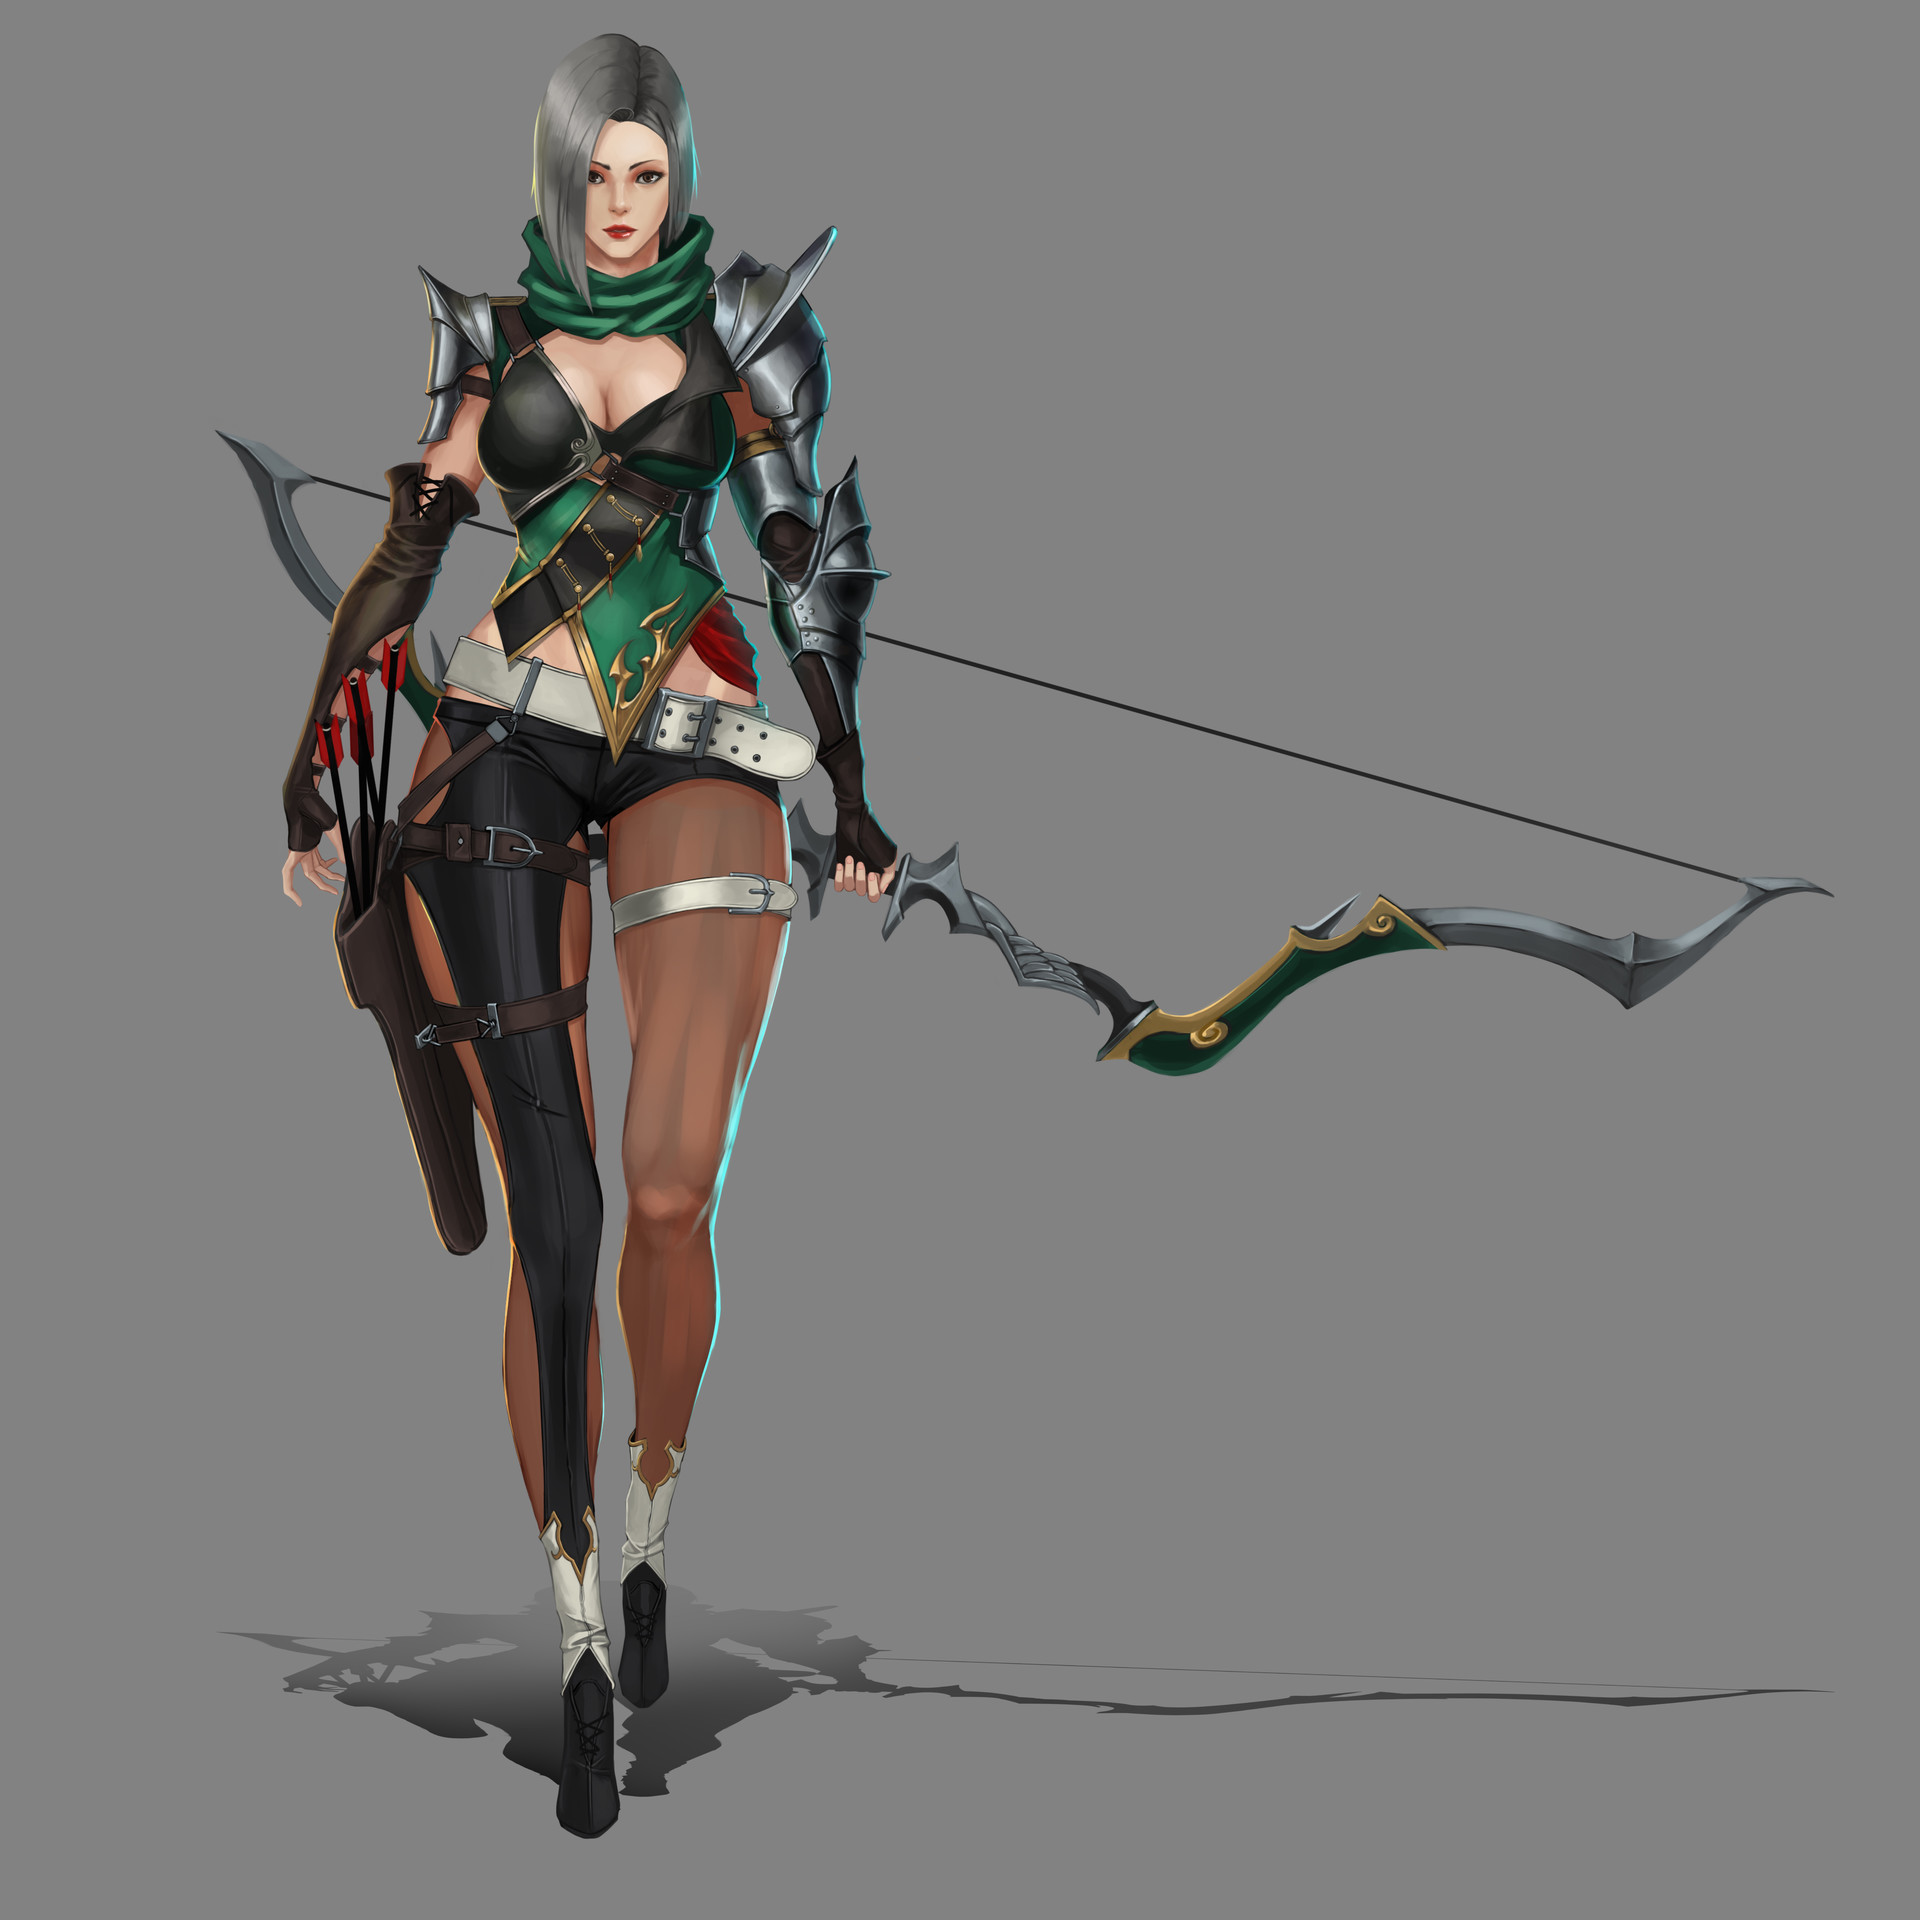 ArtStation - female archer